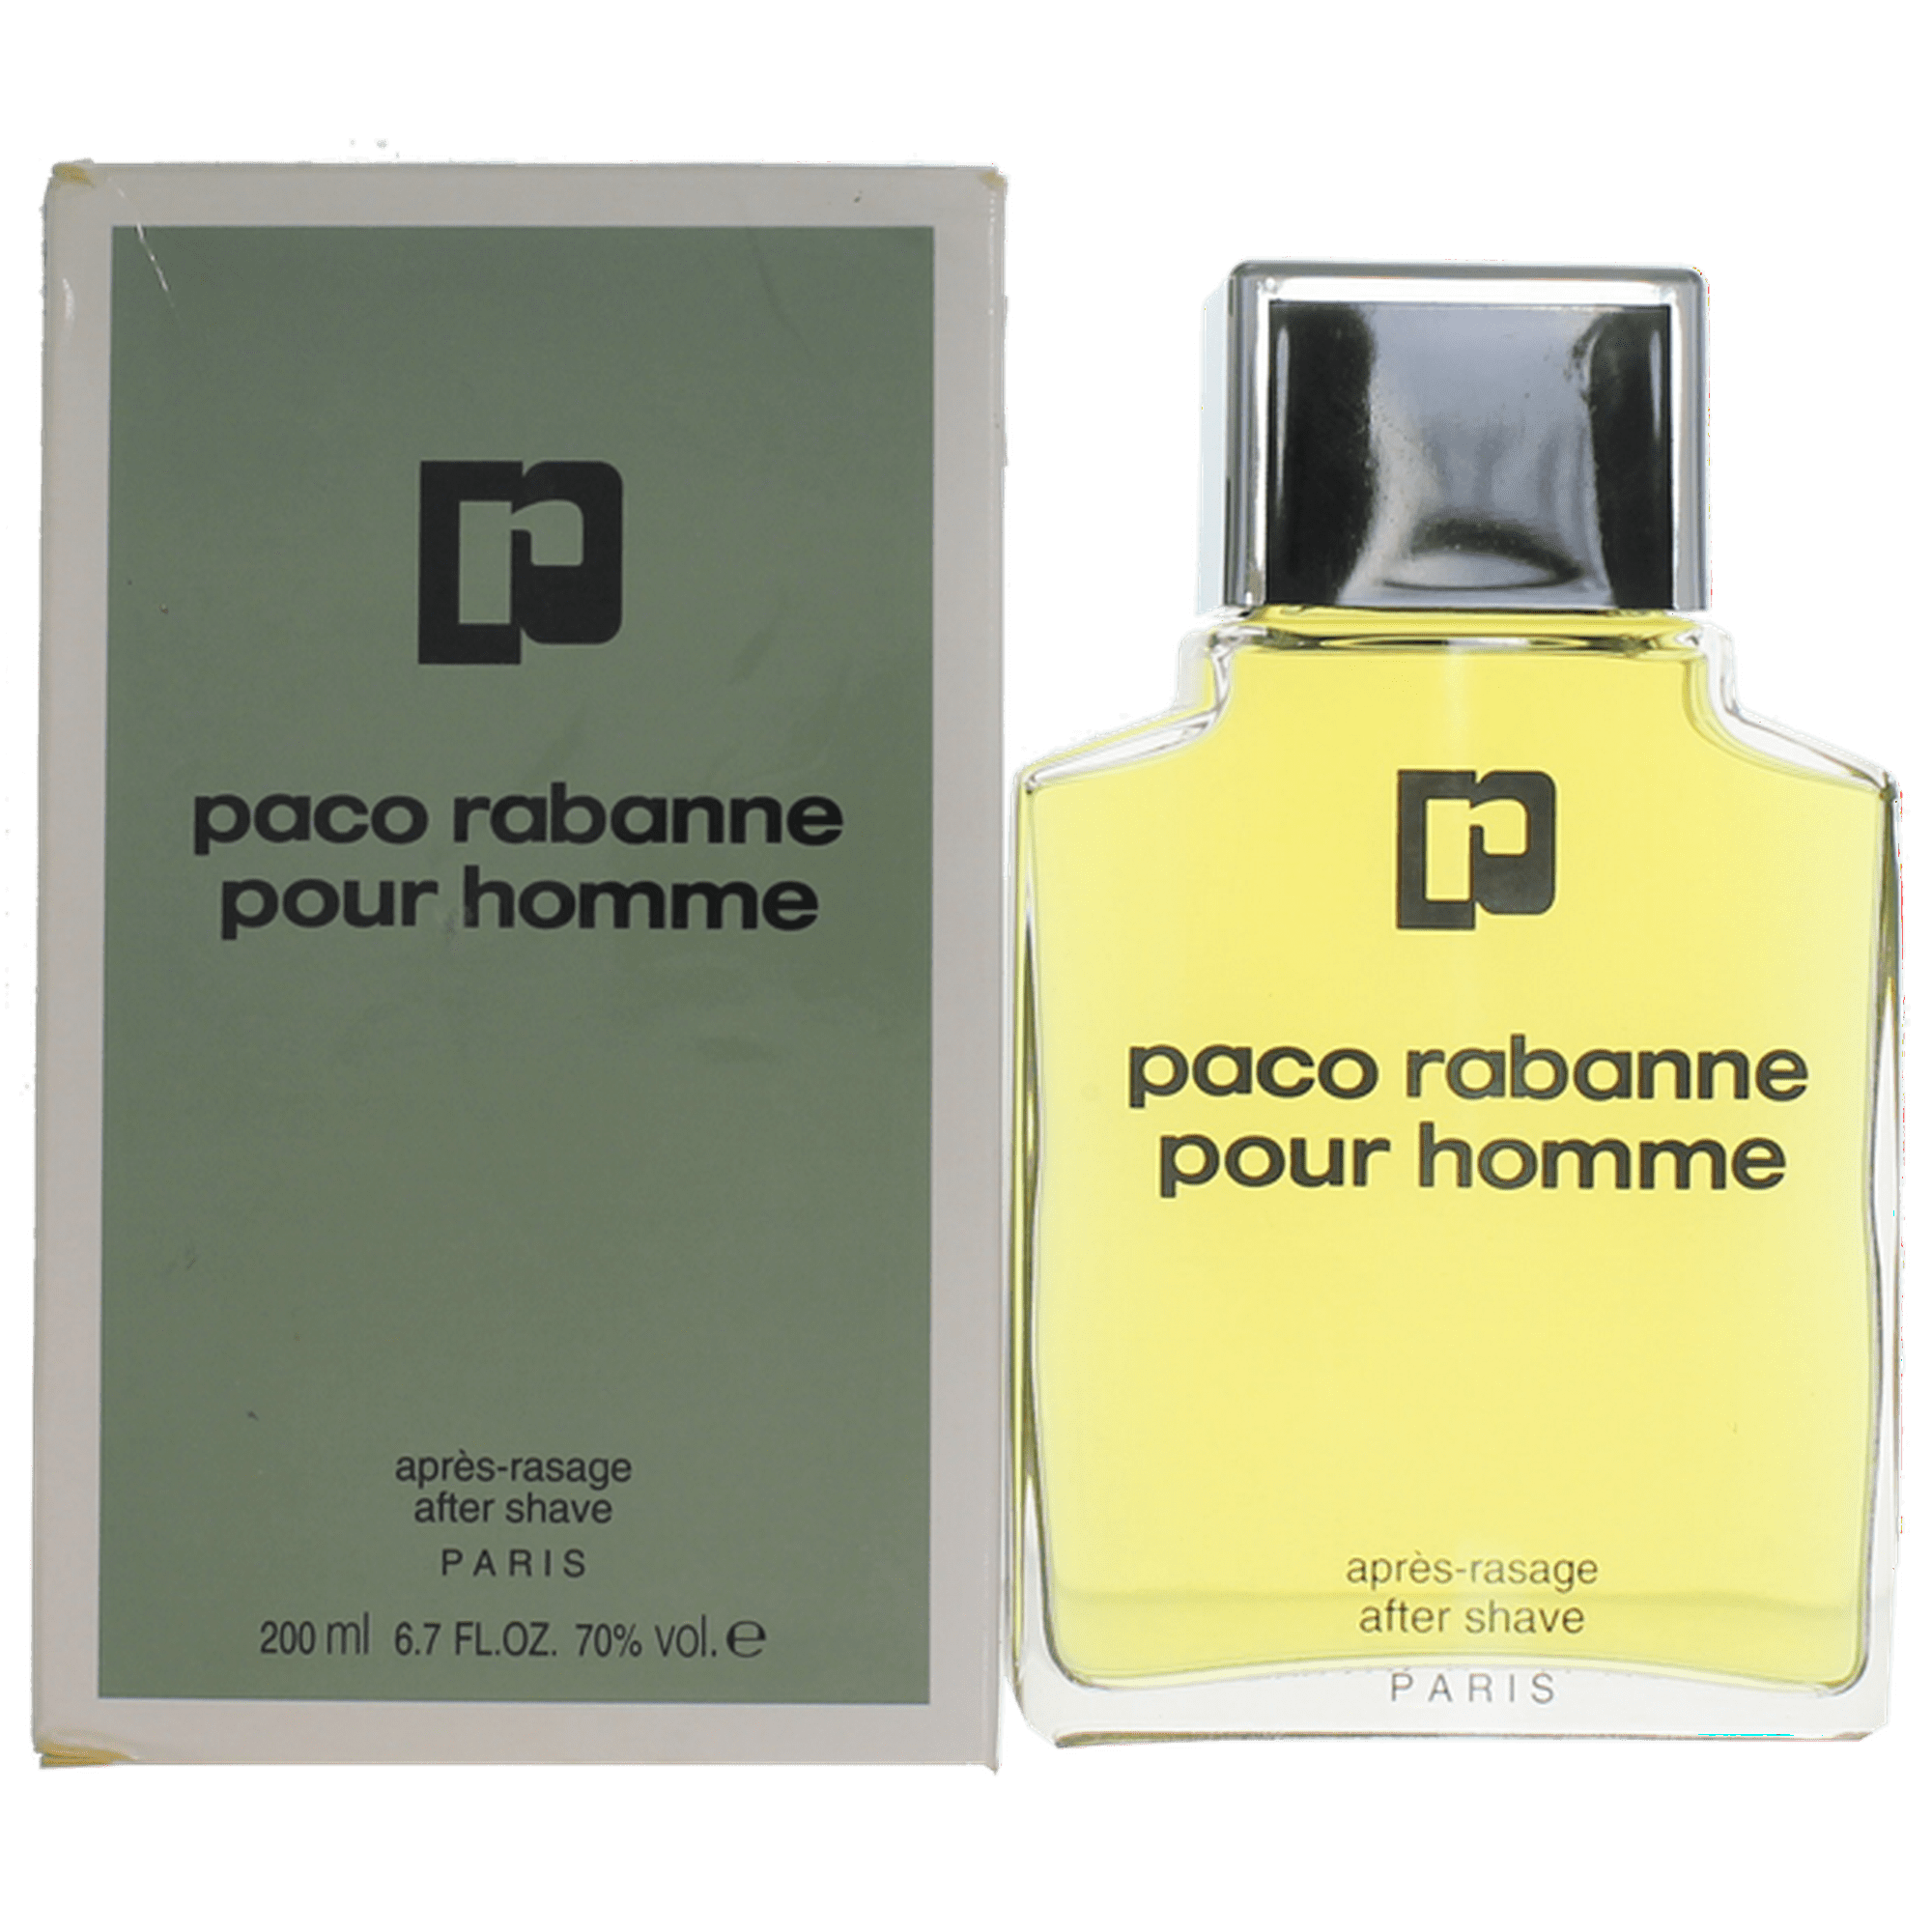 Paco pour homme. Paco Rabanne XS pour homme купить. De calandre Paco Rabanne Eau отзывы. Cacharel apres rasage pour homme Винтаж отзывы покупателей.